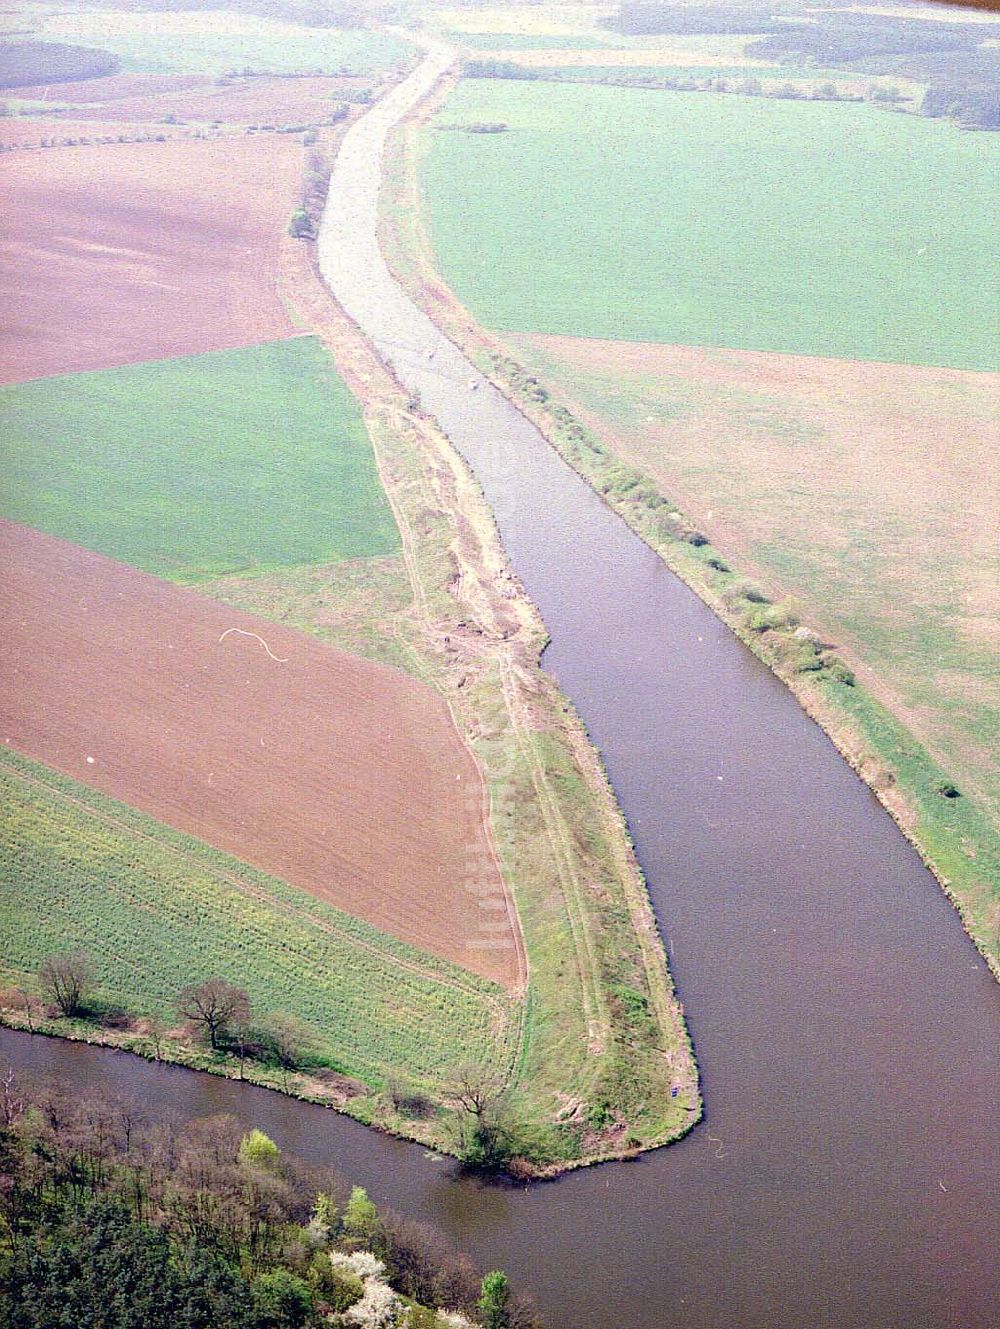 Bergzow von oben - Elbe - Havel - Kanal bei Bergzow